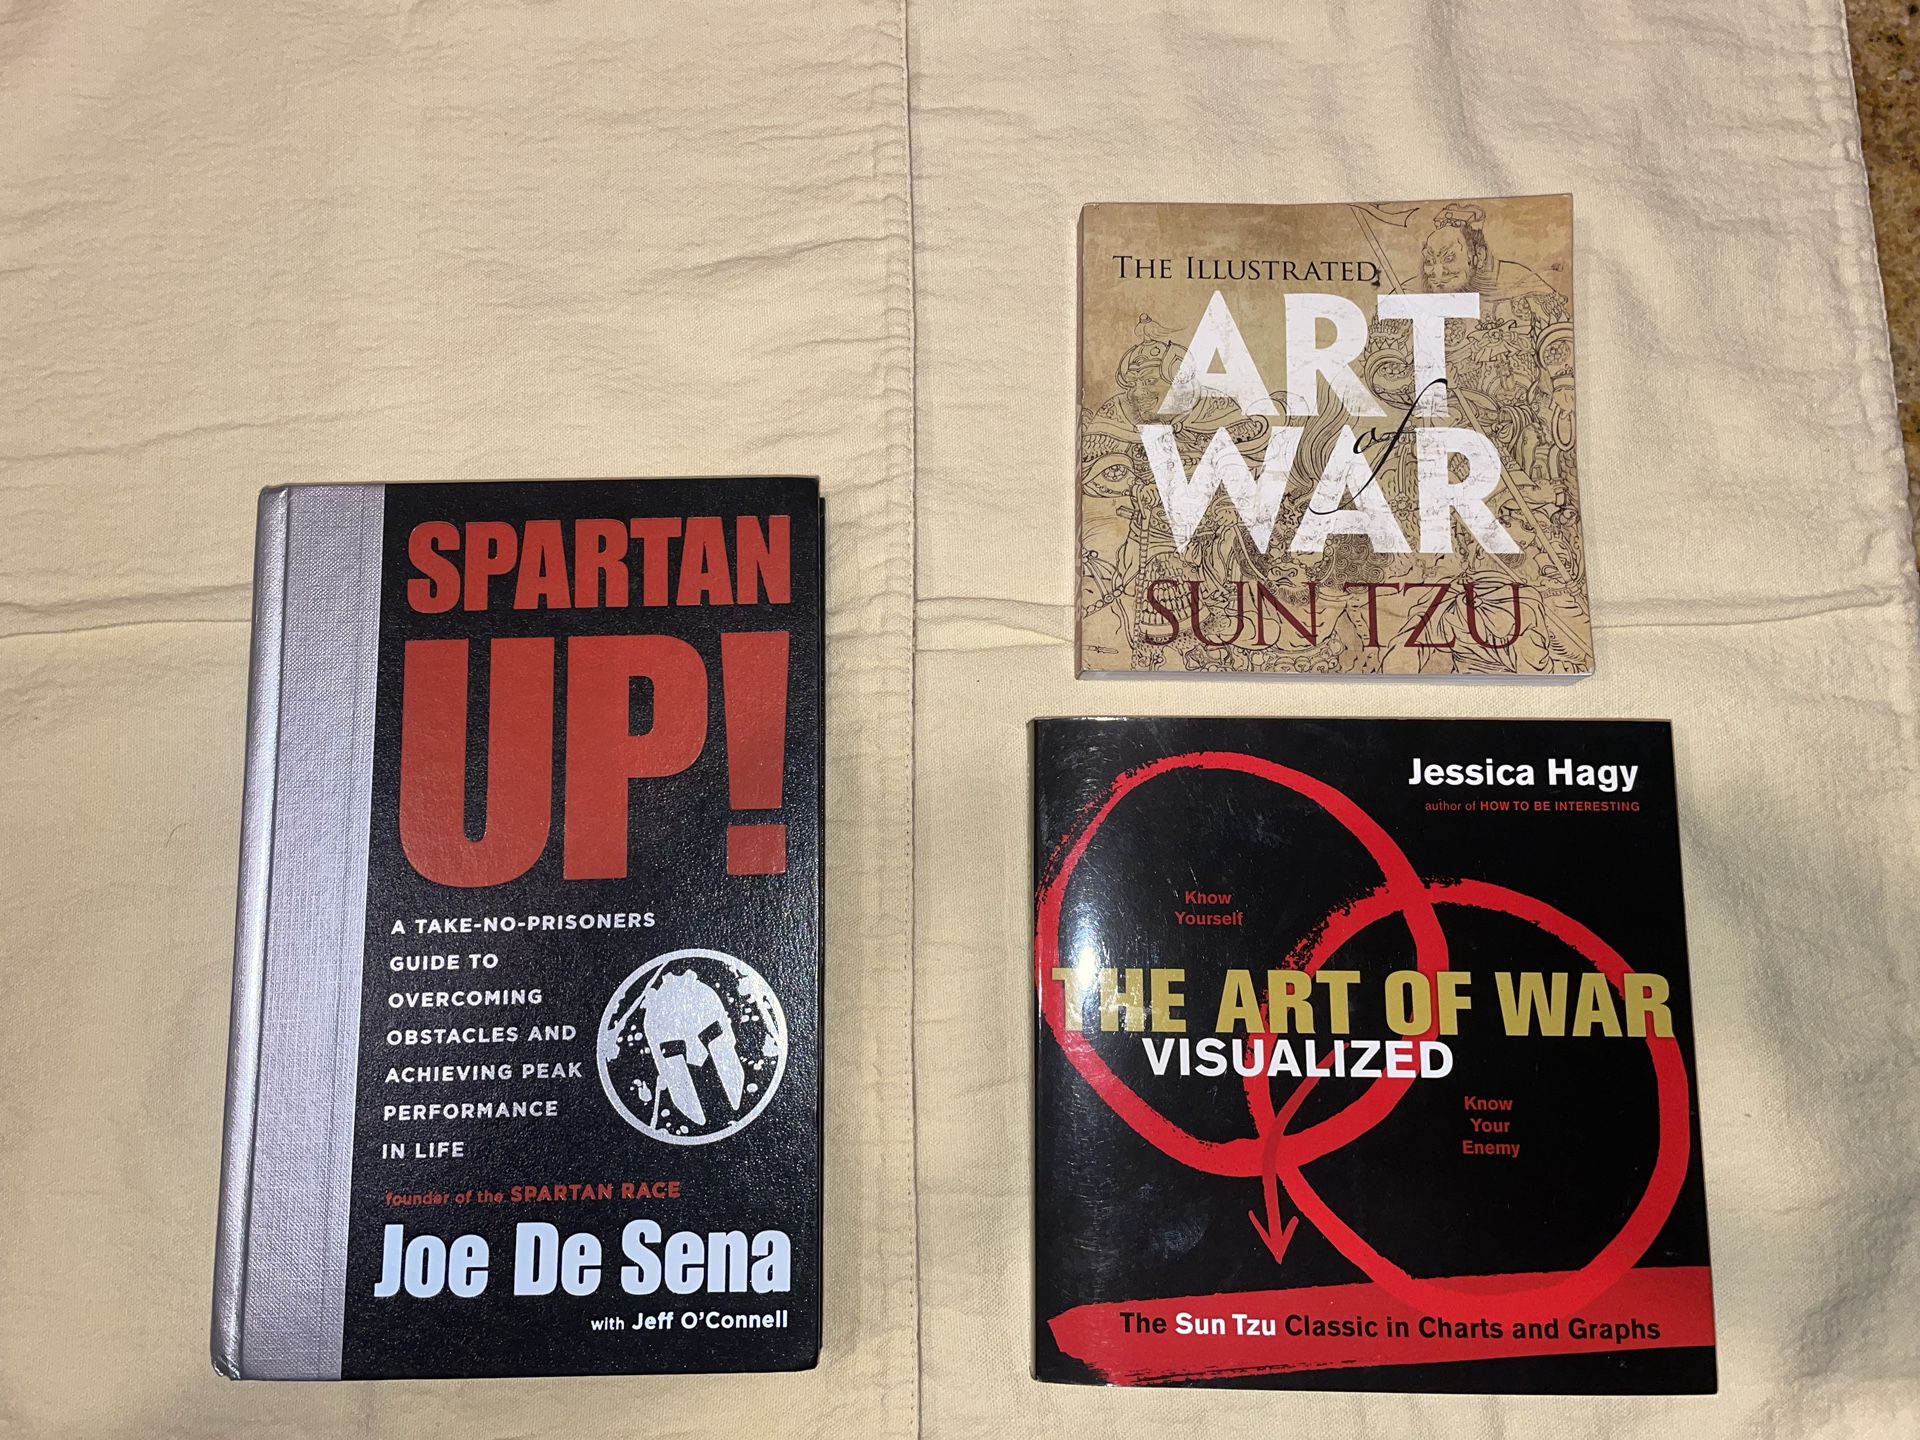 Spartan & Art of War Books 